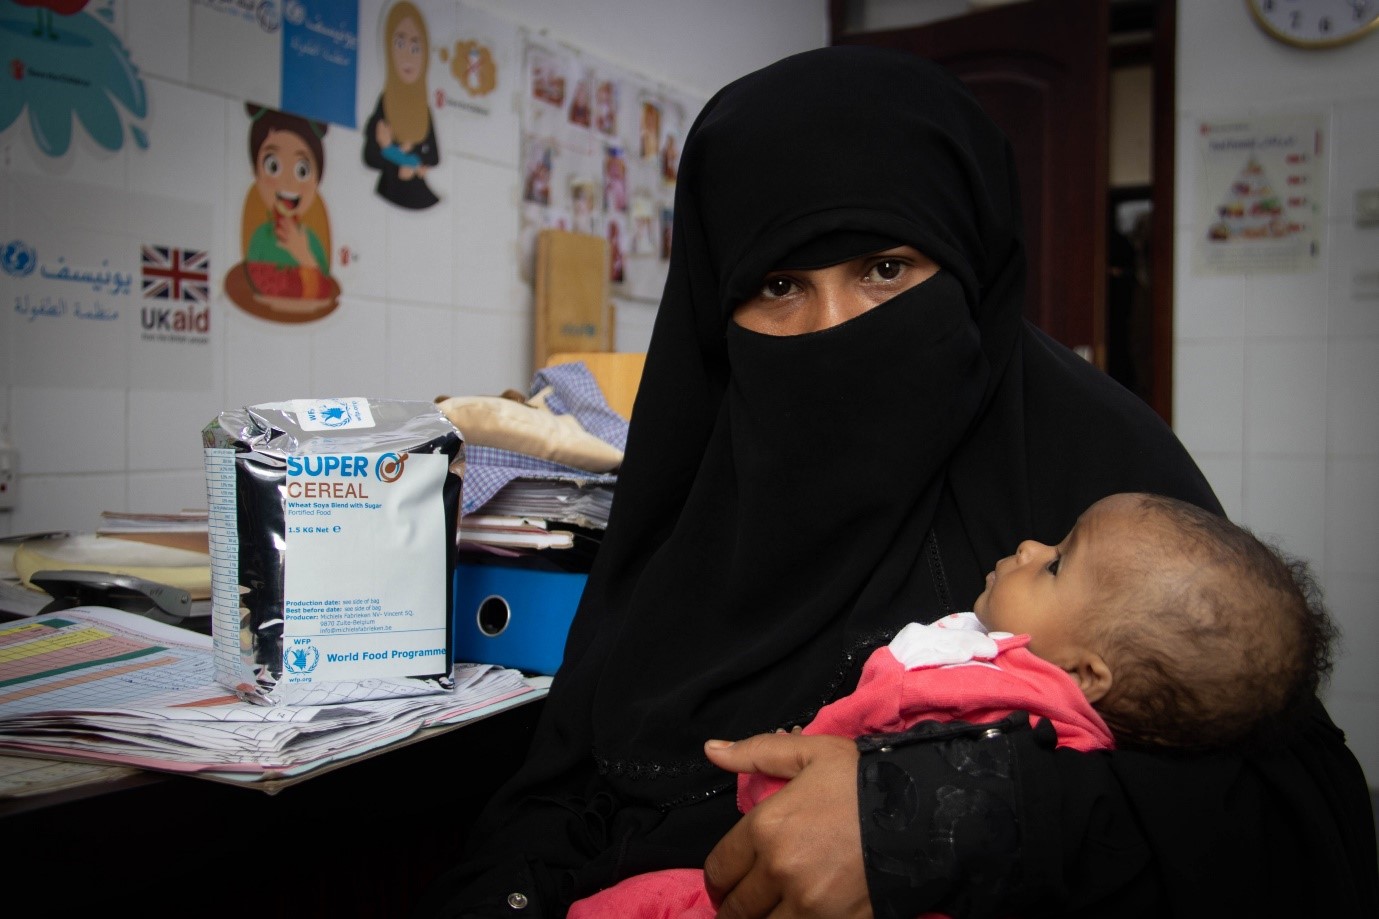 يقدم برنامج الأغذية العالمي المساعدات الغذائية الطارئة إلى 13 مليون شخص في اليمن والدعم الغذائي لنحو 1.1 مليون طفل وامرأة. صورة: برنامج الأغذية العالمي